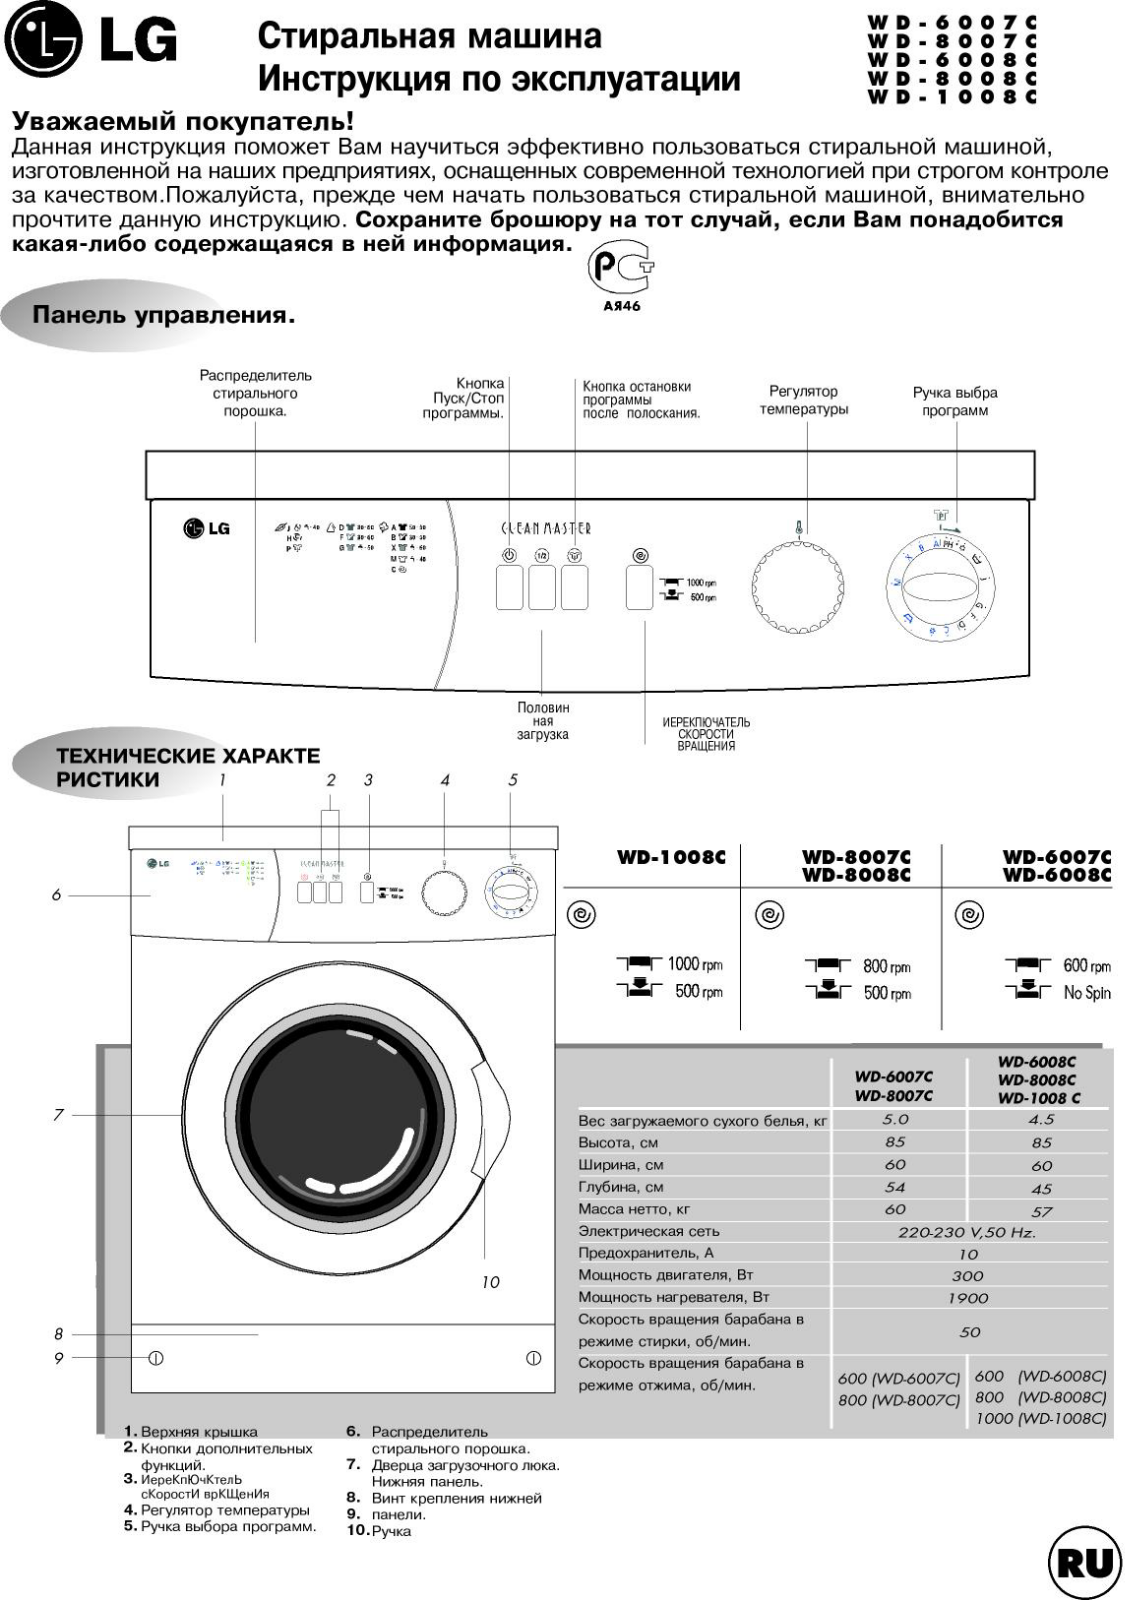 LG WD-6007C User Manual